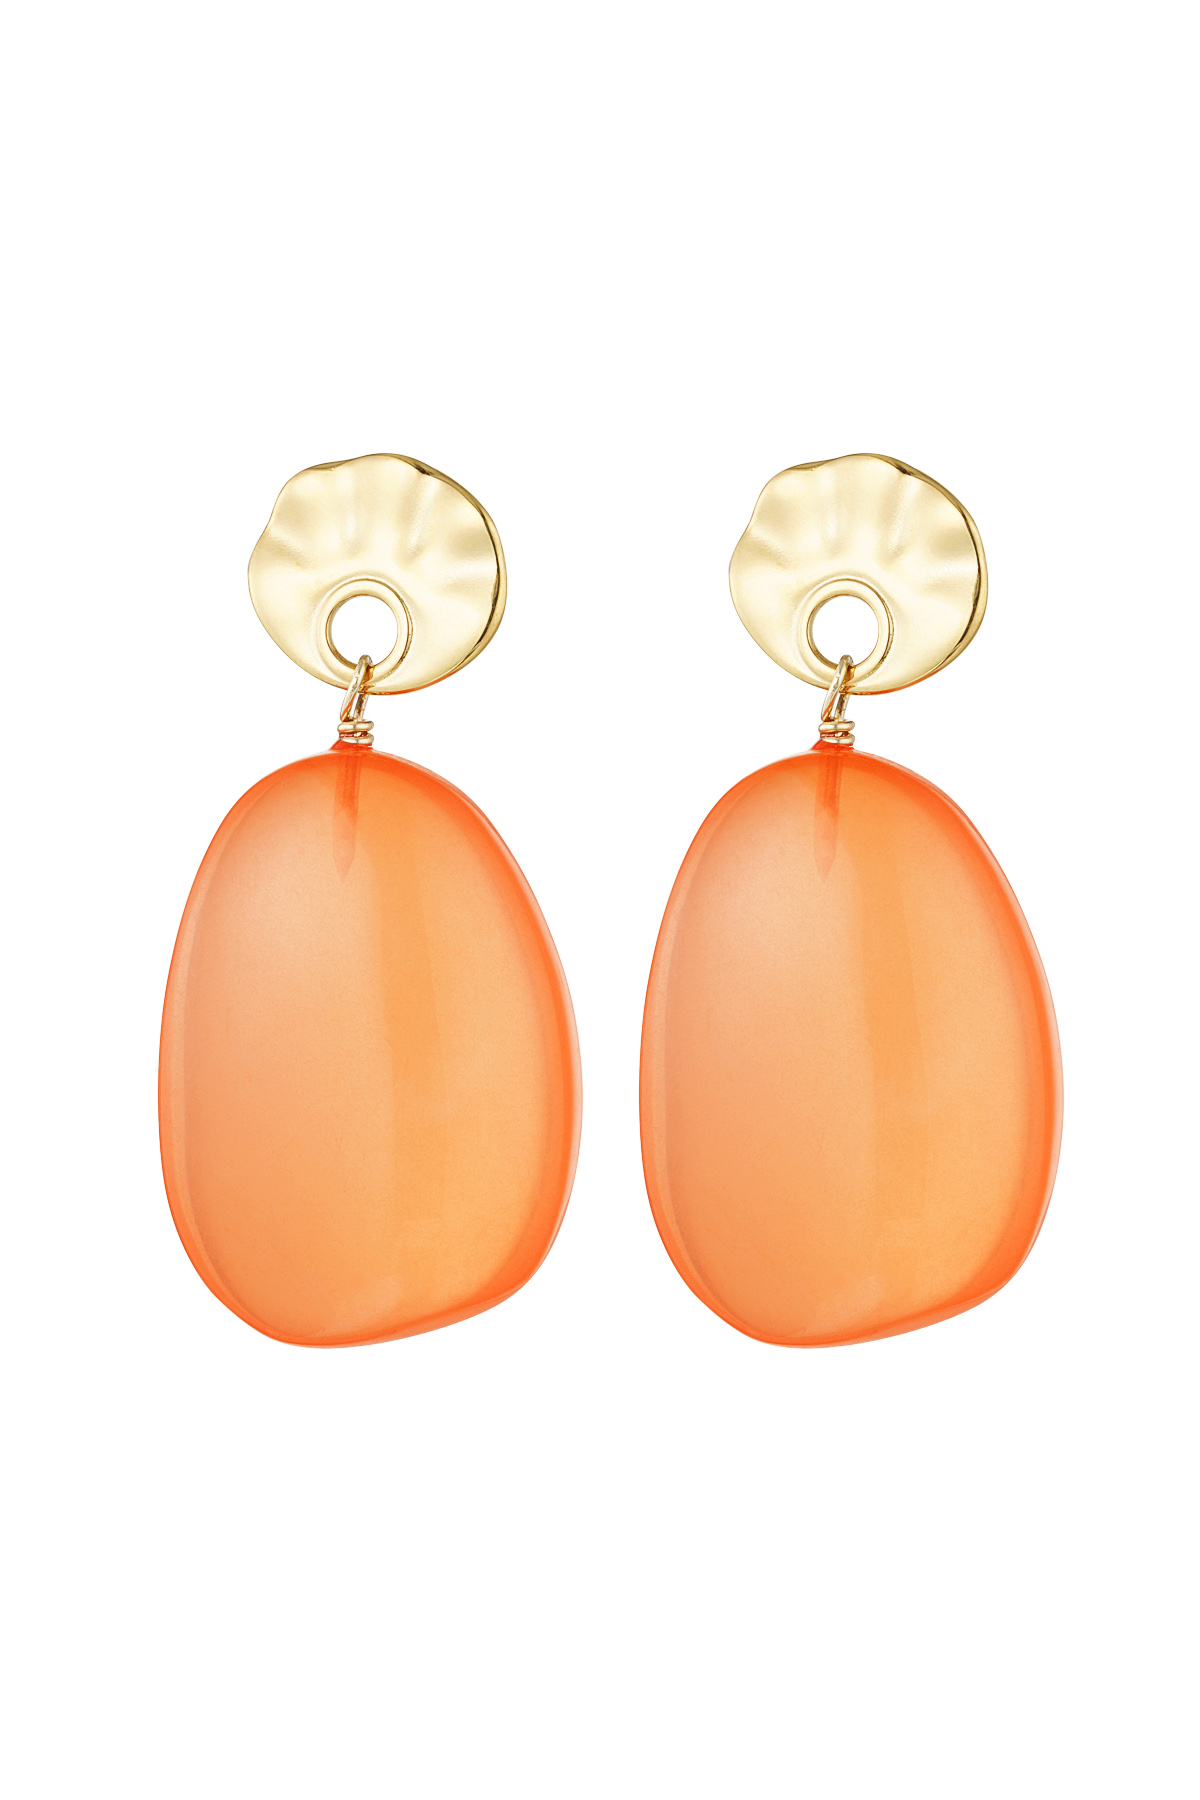 Ohrringe rund und oval - orange/gold 